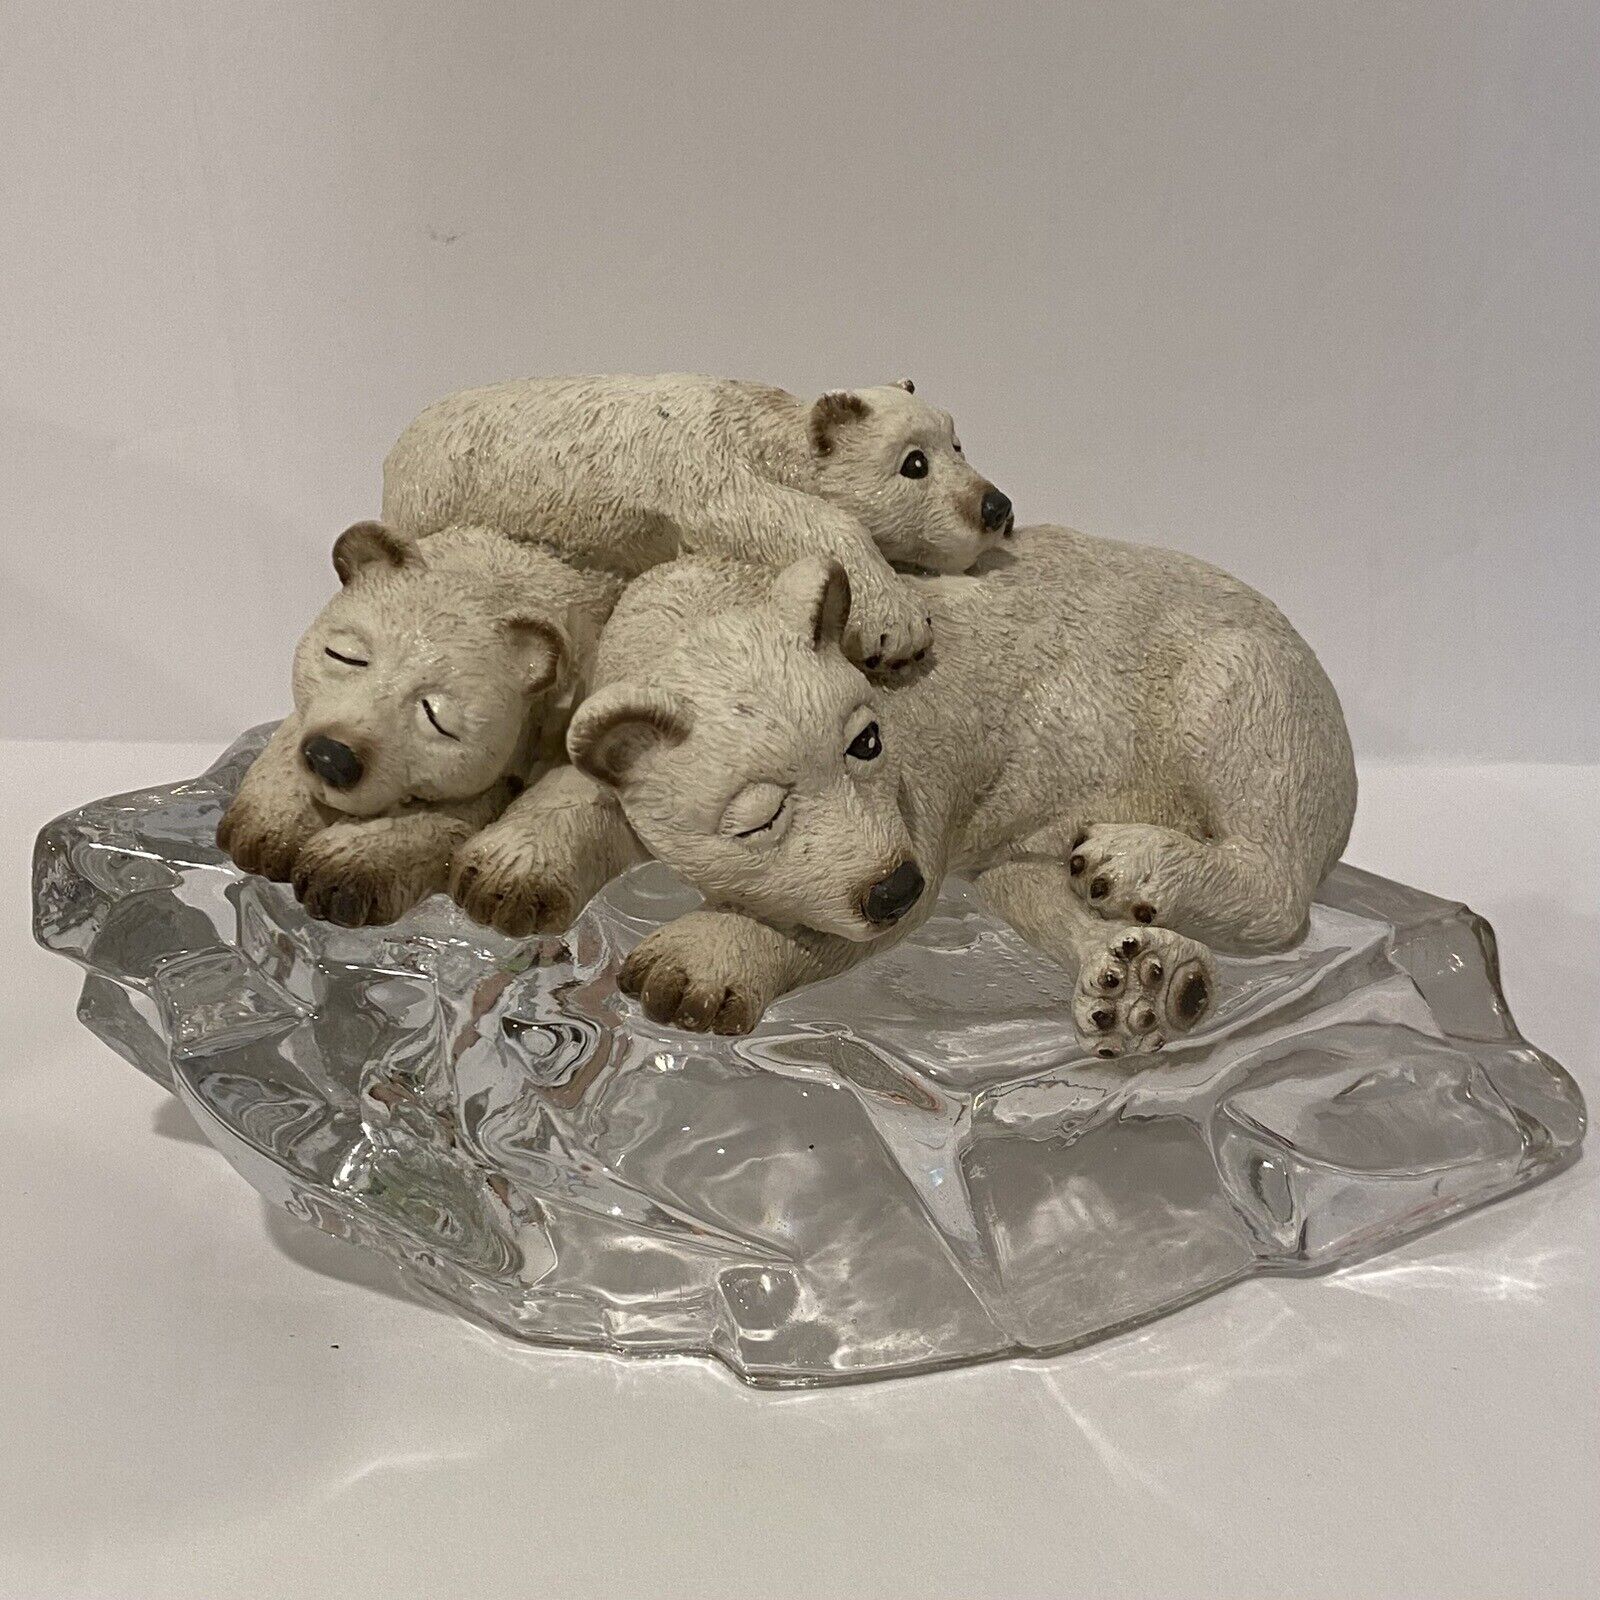 Vintage House of Lloyd - Polar Bear Family on Ice - Figurine (1995)